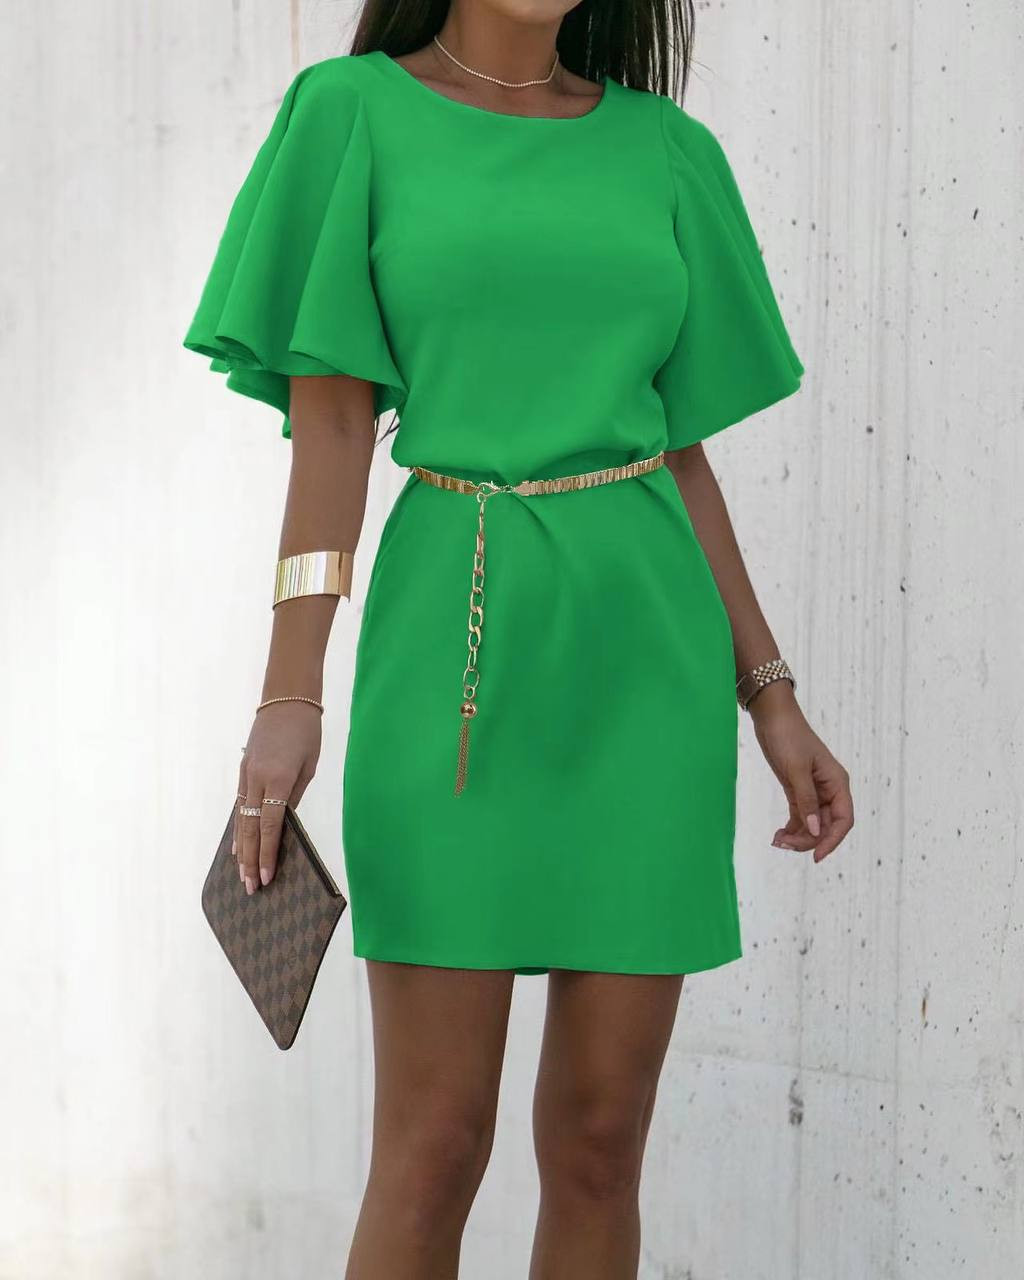 Γυναικείο φόρεμα με ζώνη 22795 πράσινο